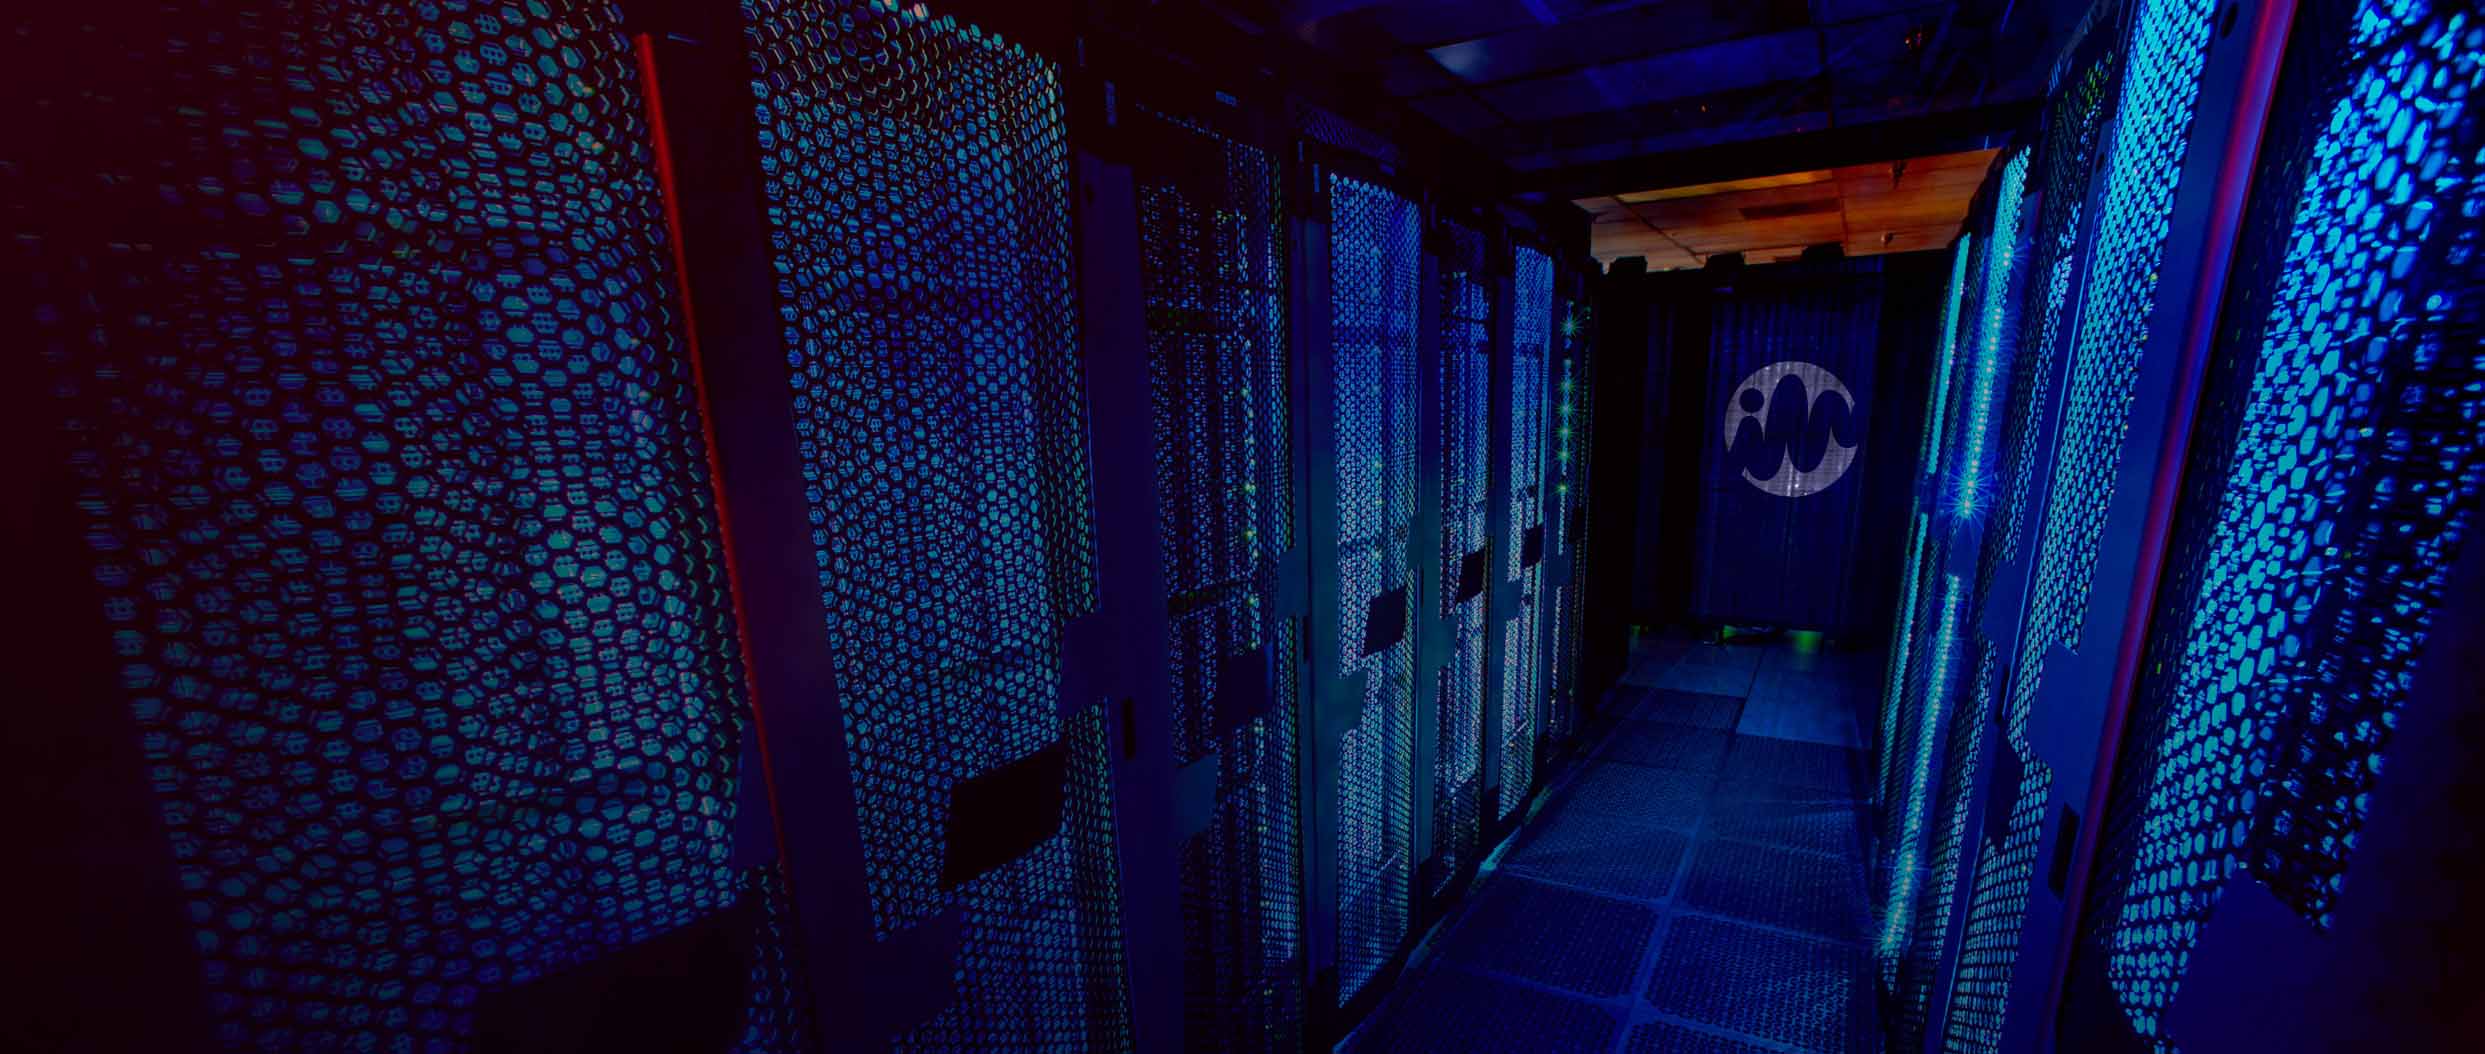 Server room bathed in blue light